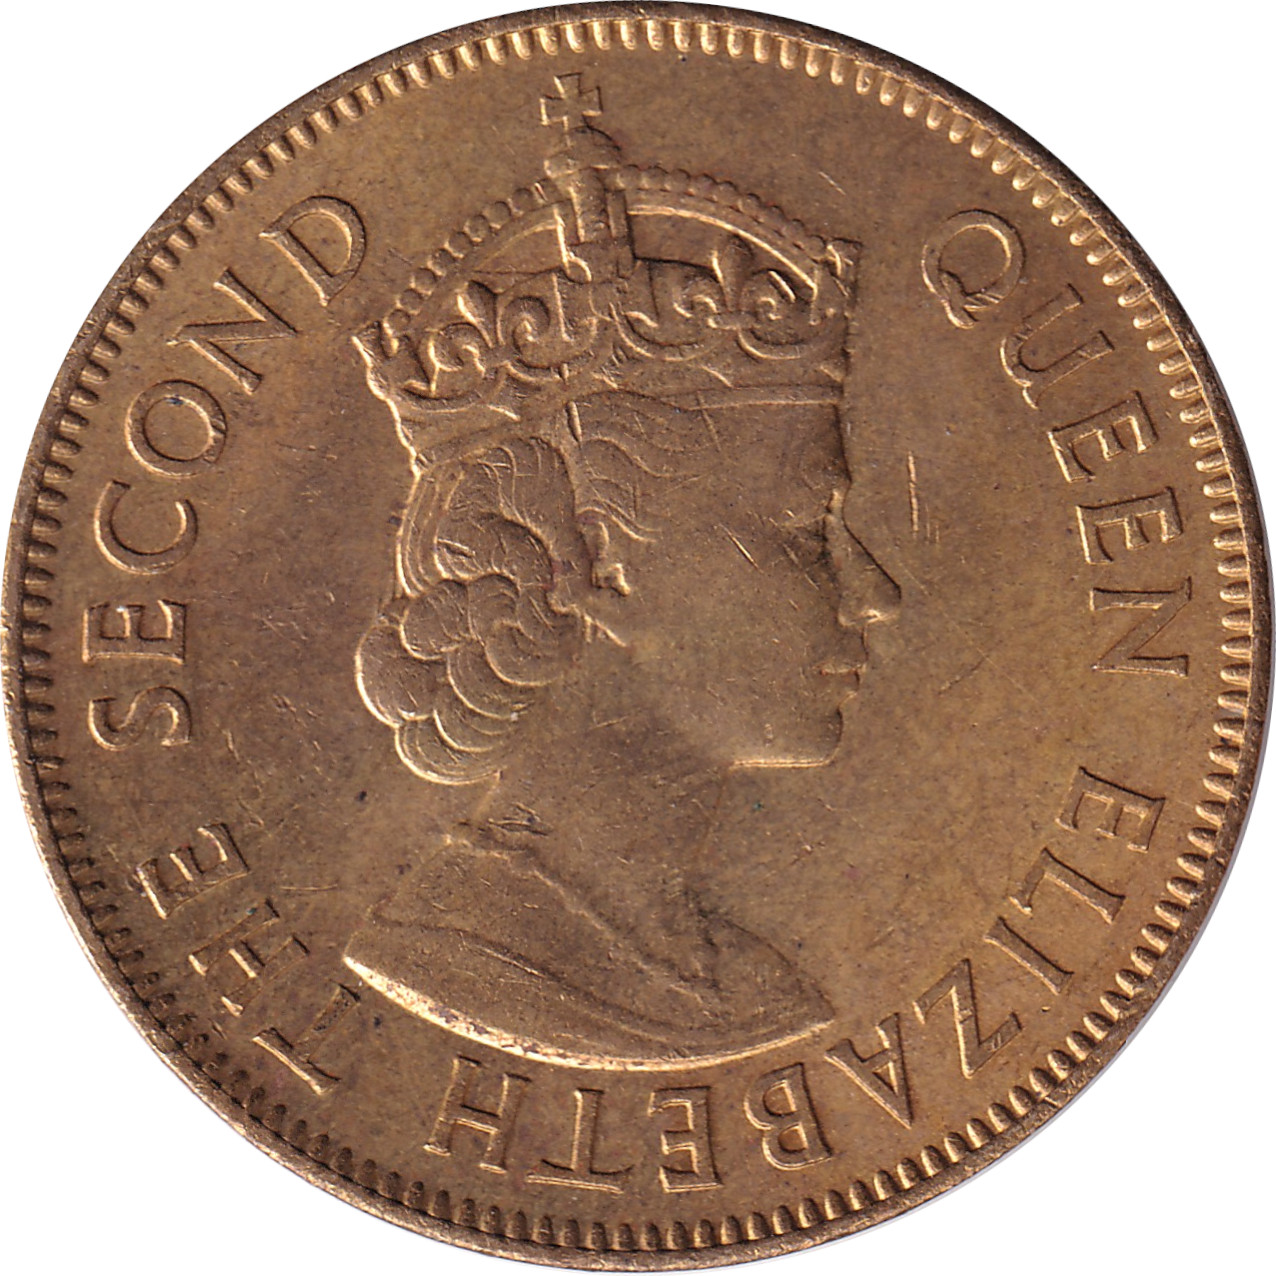 1 penny - Elizabeth II - Shield